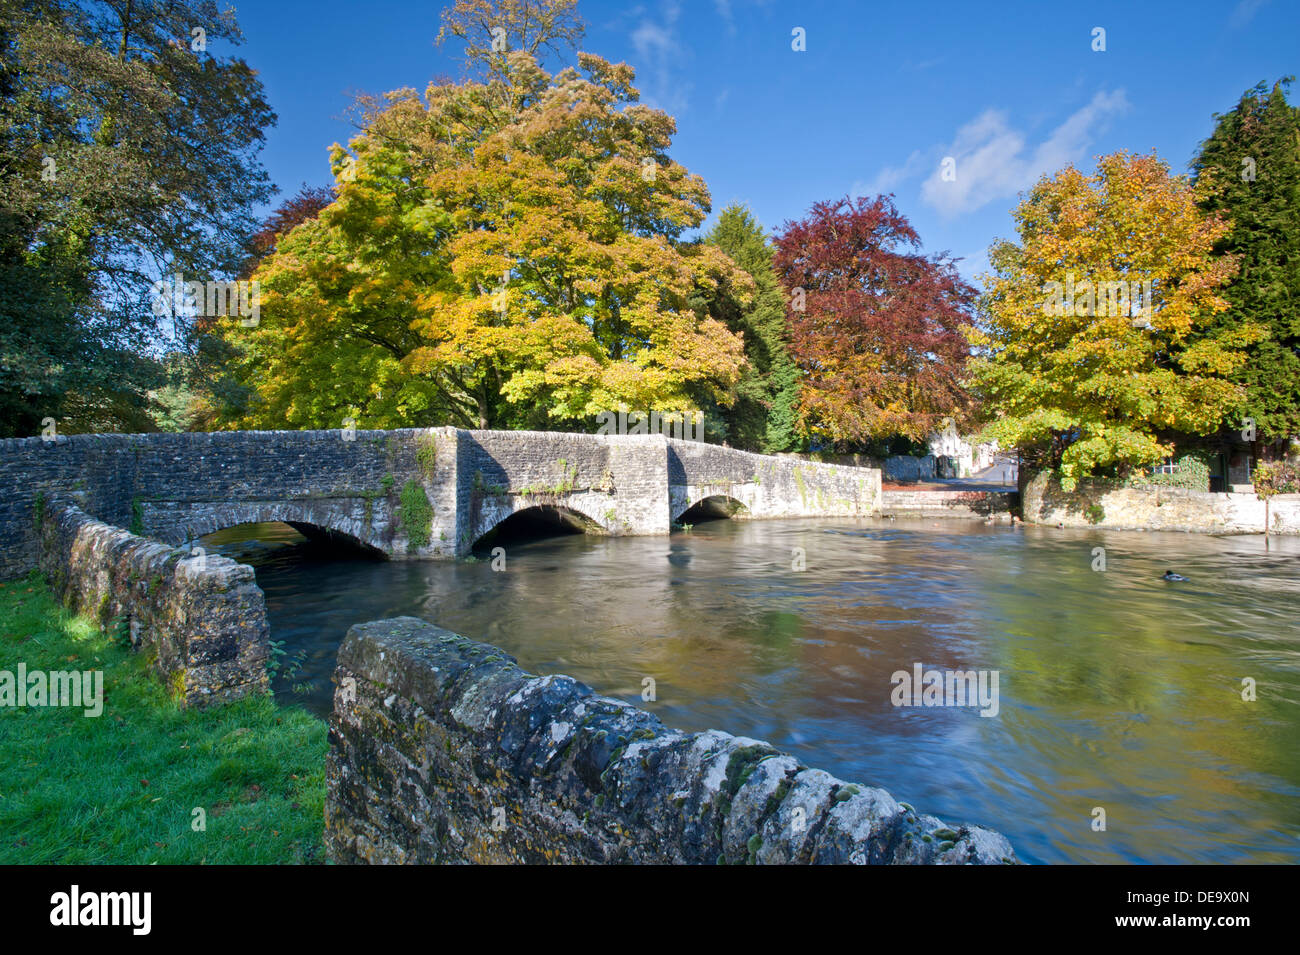 Ashford dans le Village de l'eau en automne, Parc national de Peak District, Derbyshire, Angleterre, RU Banque D'Images